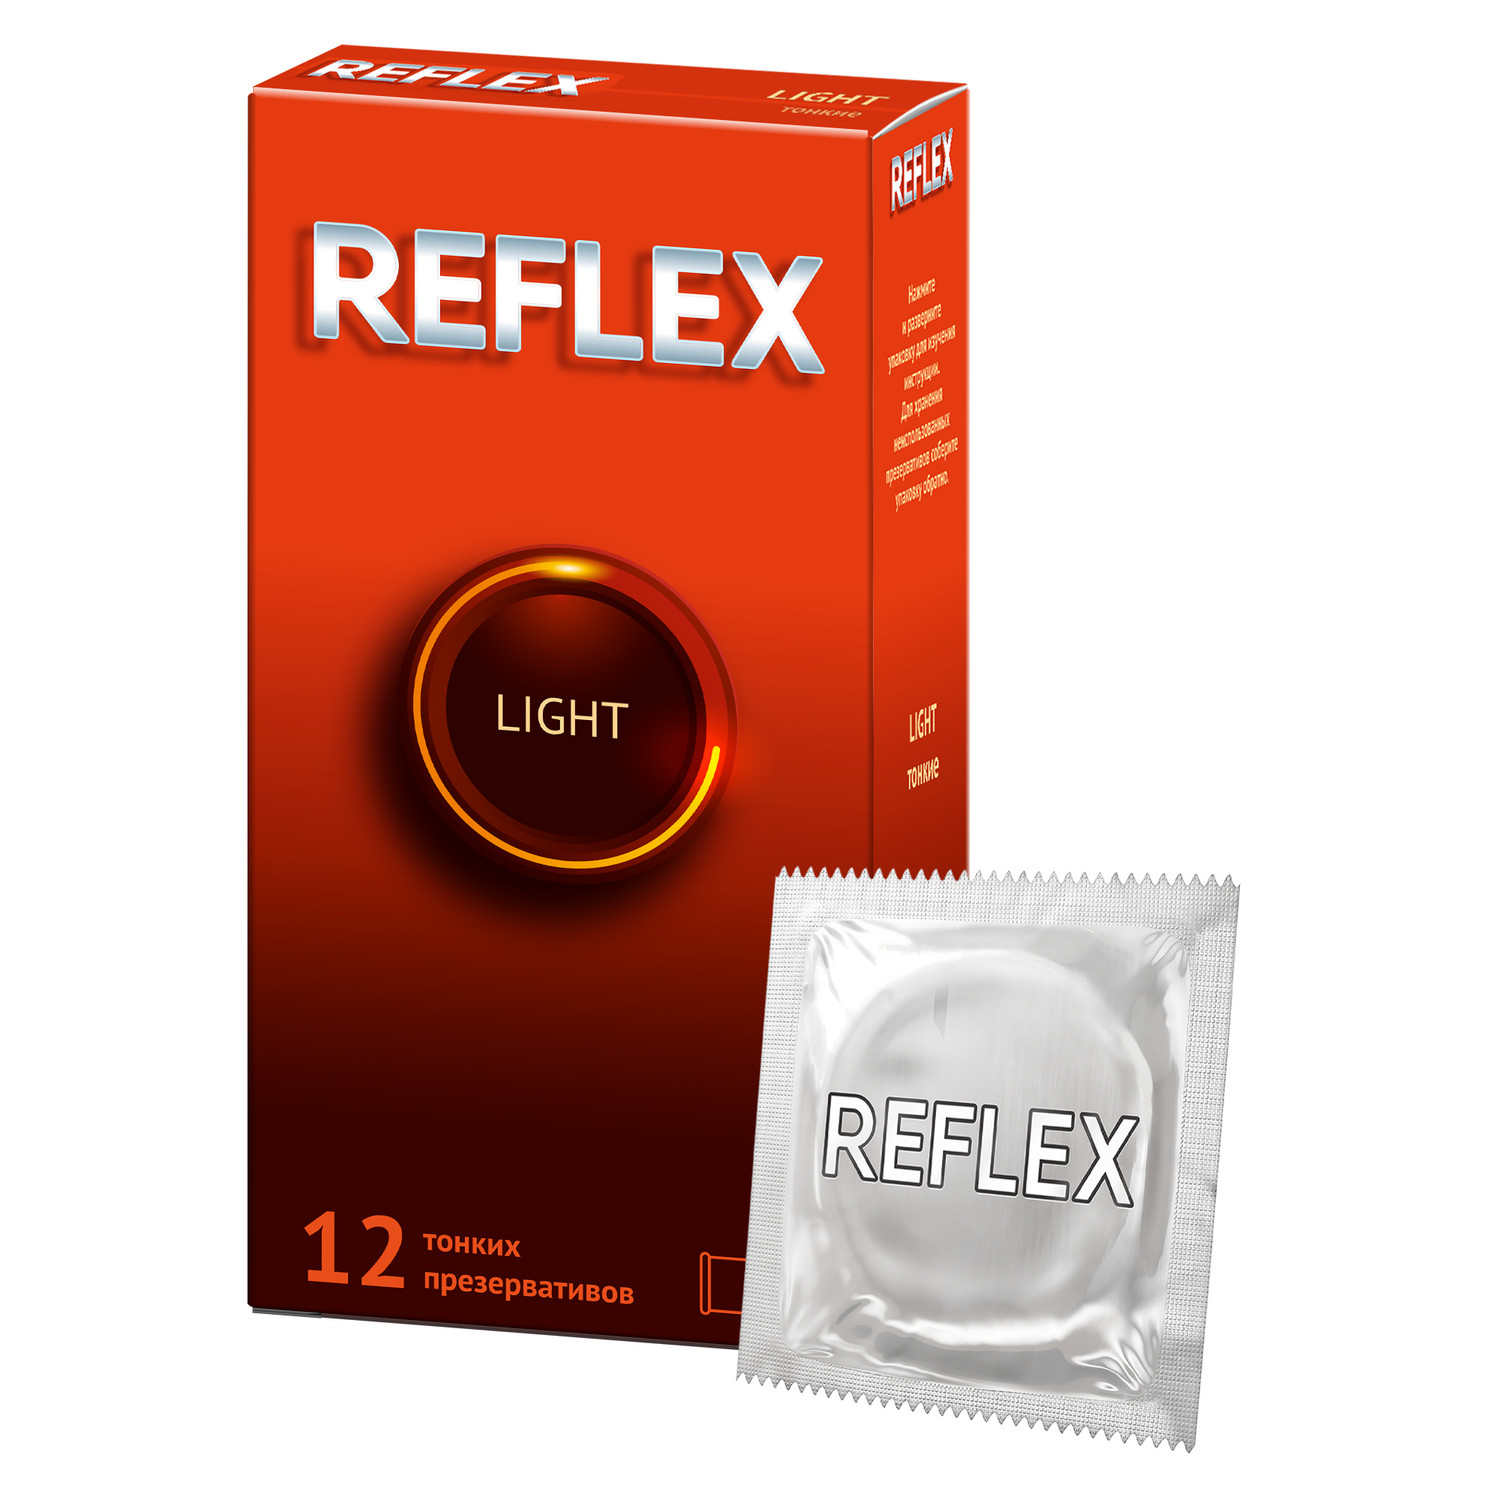 Reflex Light презервативы в смазке, 12 шт. презервативы маскулан 2 10 ультра особо тонкие обильная смазка